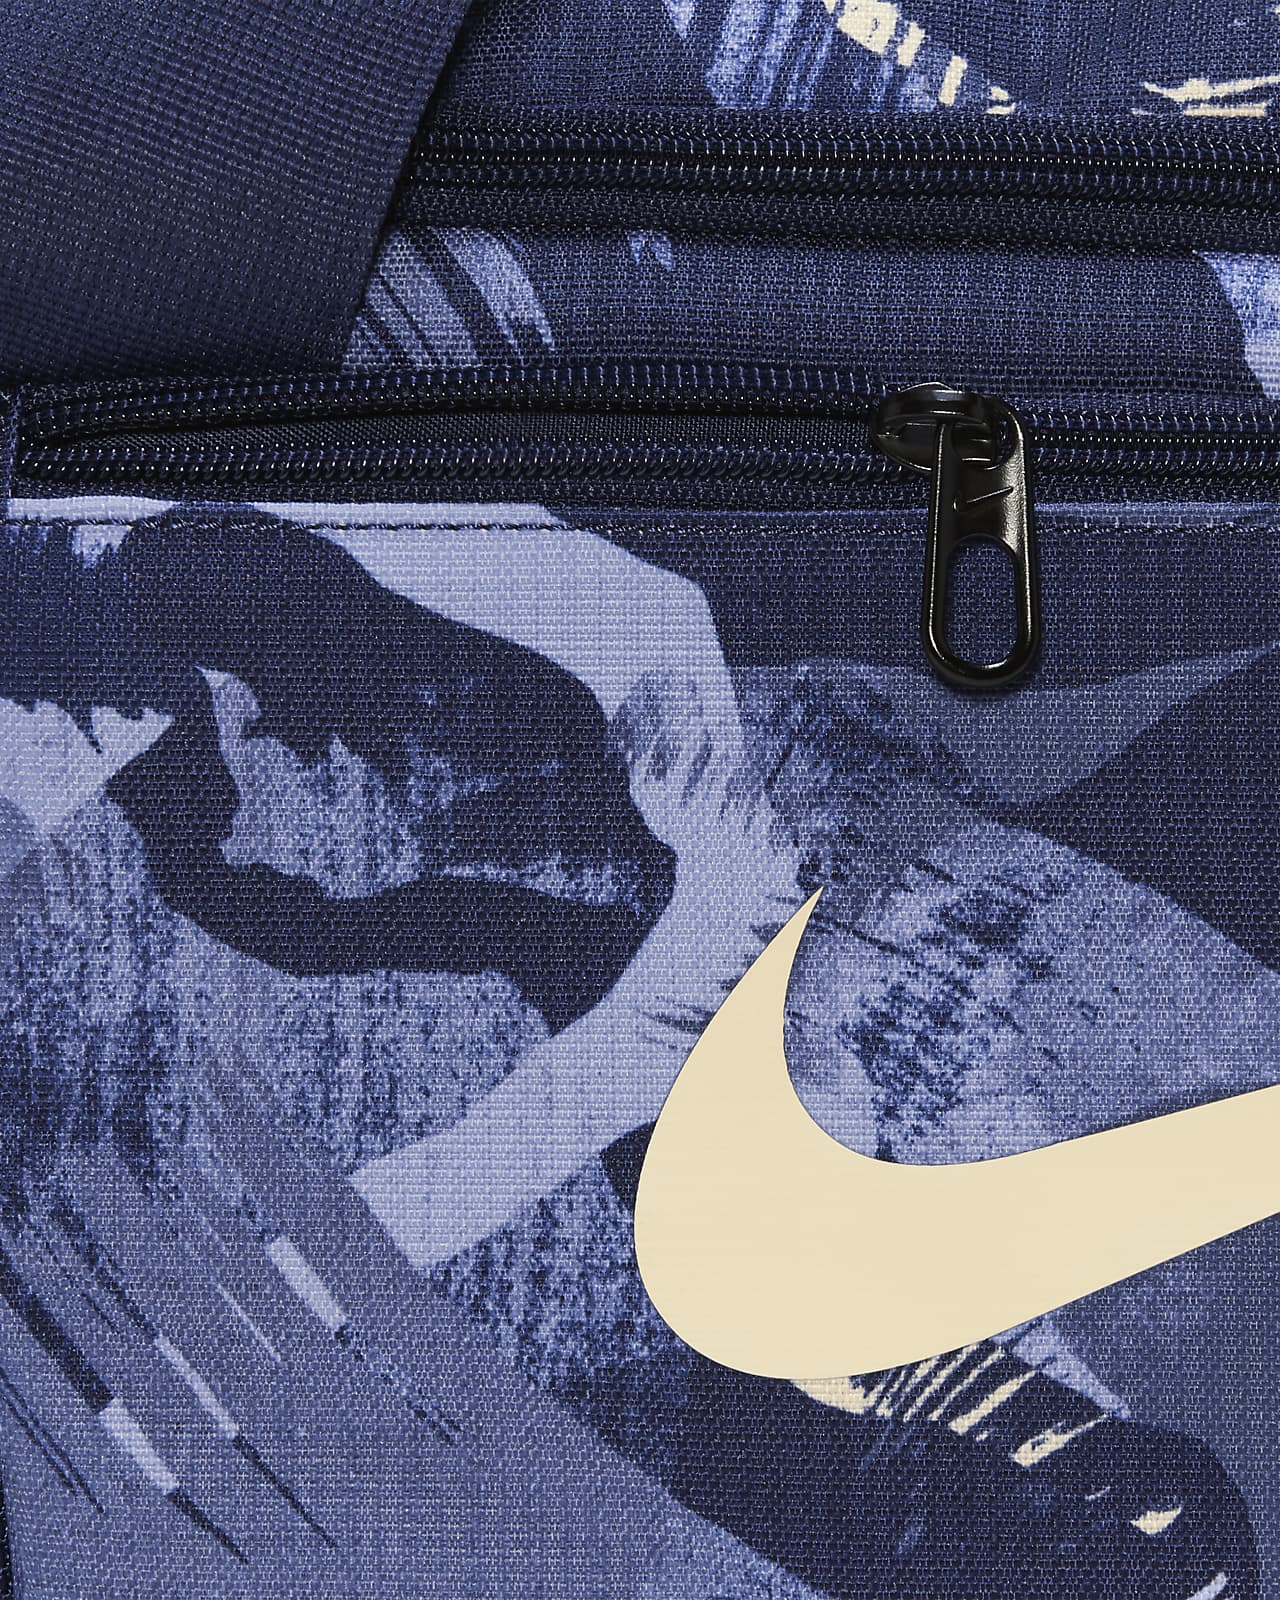 Nike Brasilia Extra Small Training Duffel Bag Midnight Navy